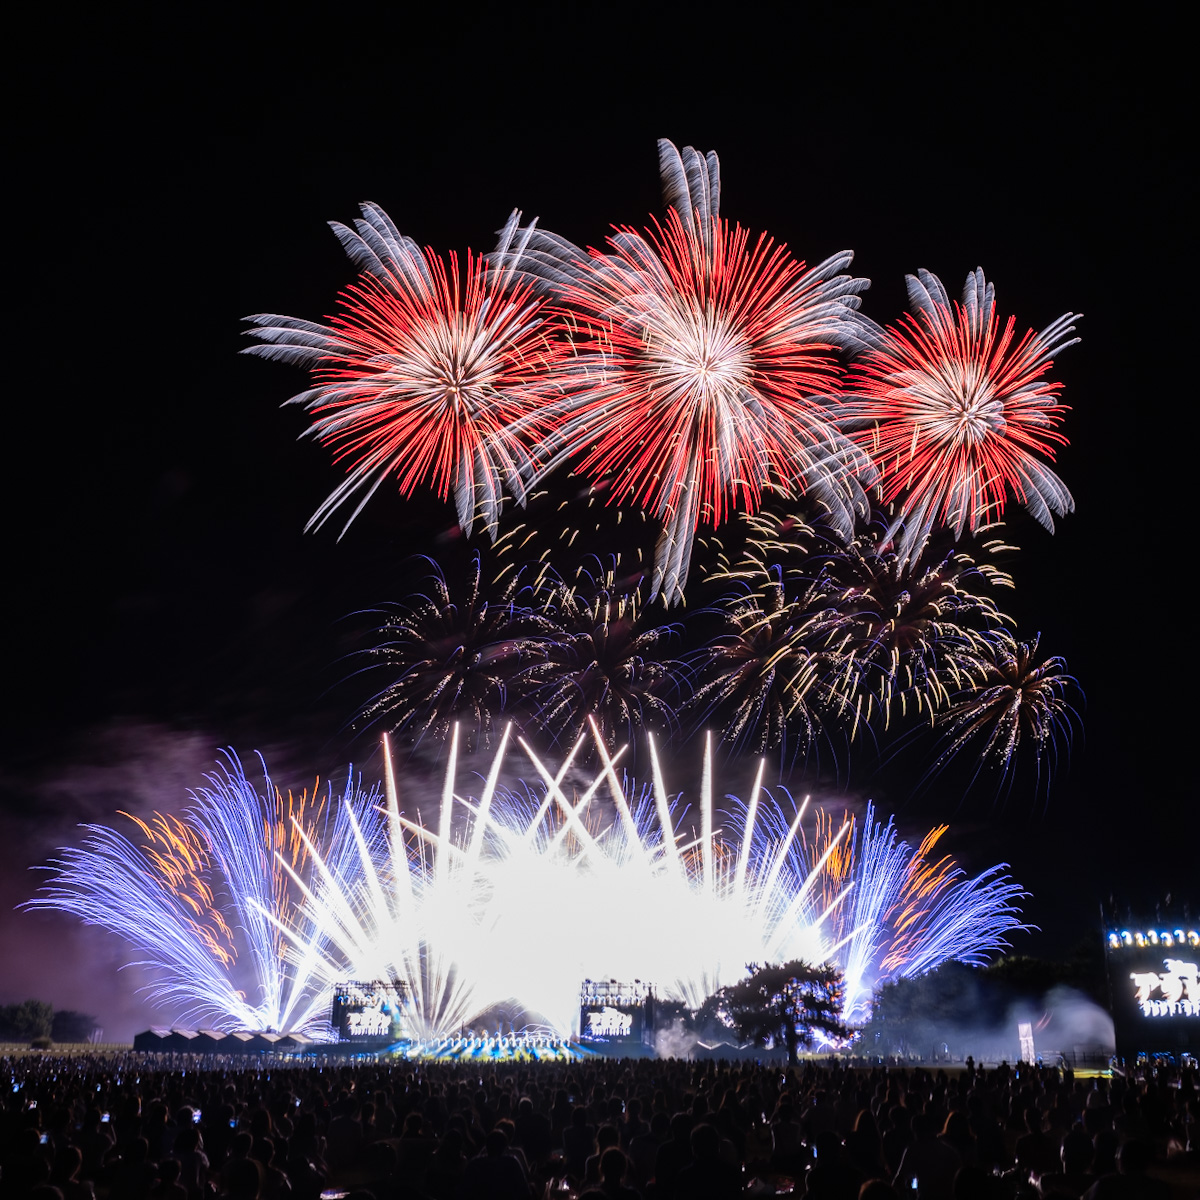 「Disney Music & Fireworks」茨城国営ひたち海浜公園 公演レポート3